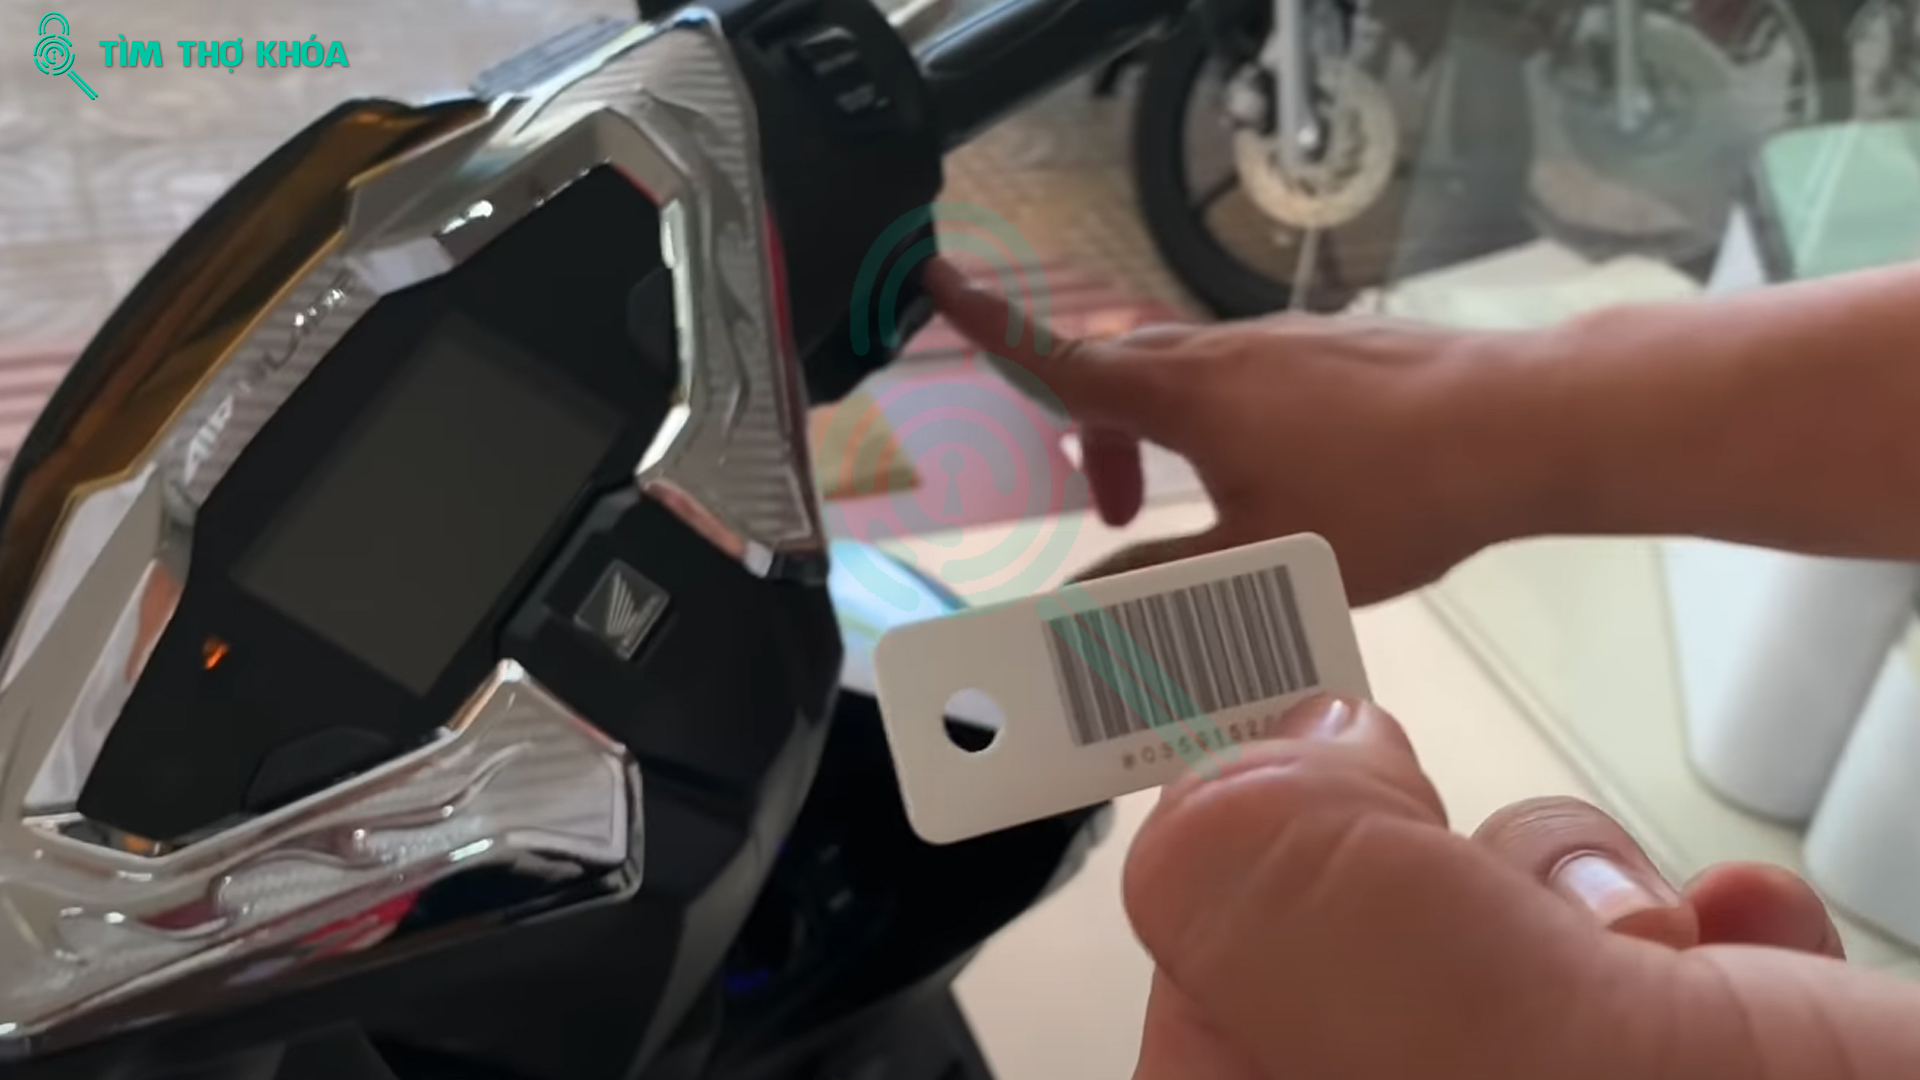 Các khởi động xe máy sử dụng ID Smartkey khi mất remote điều khiển